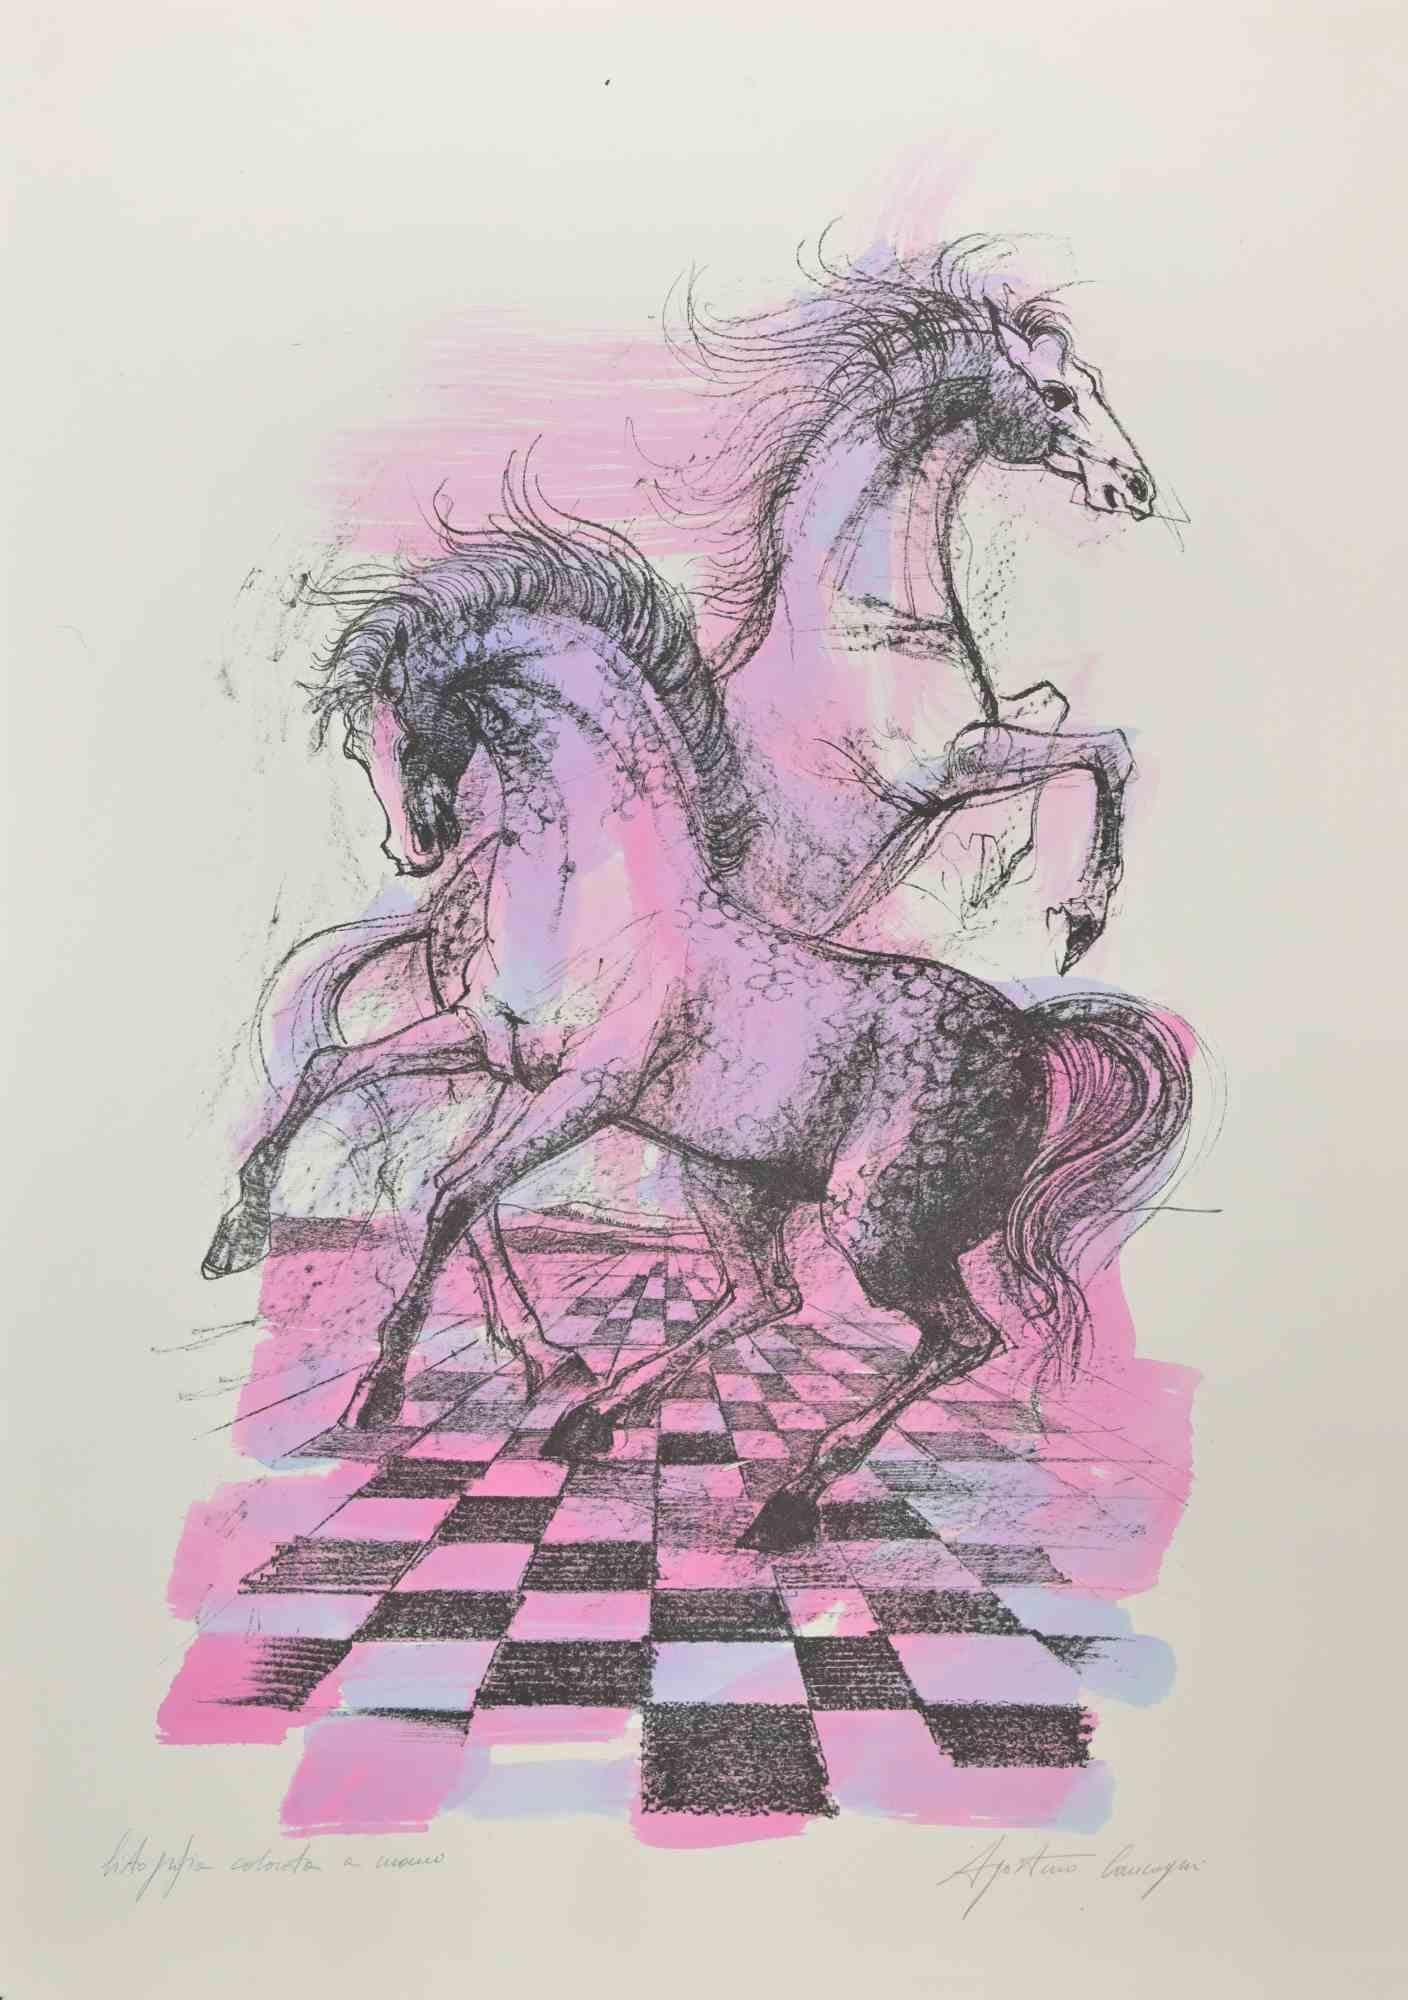 Free Horses ist eine wunderschöne Lithografie von Agostino Cancogni aus den 1980er Jahren.

Handaquarellierte Lithographie auf Papier. Einzigartiges Exemplar. 

Vom Künstler persönlich koloriert und am unteren rechten Rand handsigniert. Technik